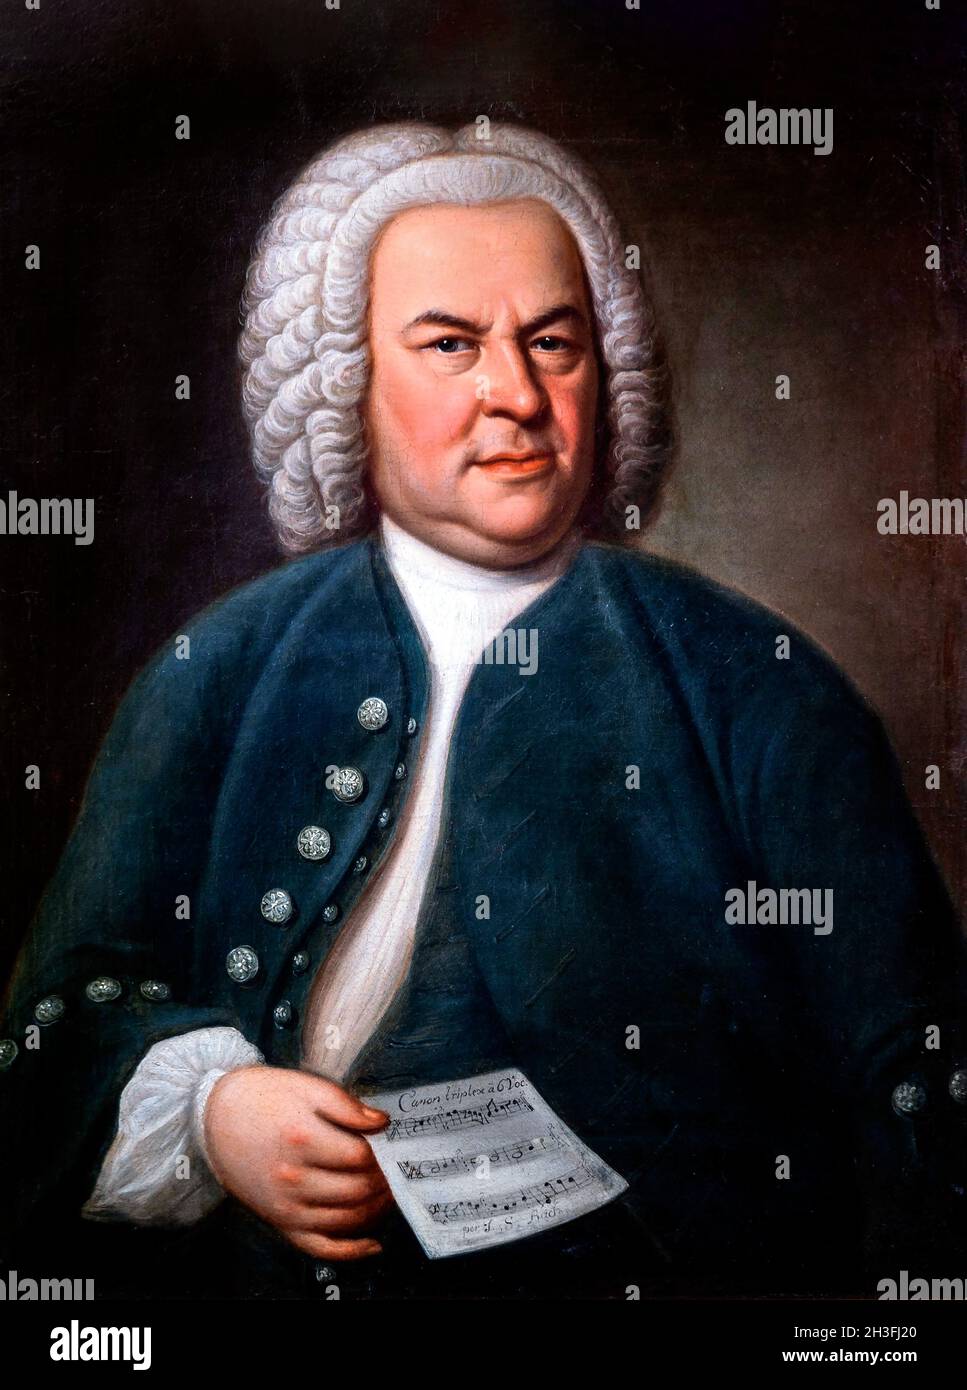 Johann Sebastian Bach. Ritratto del compositore barocco tedesco, J S Bach (1685-1750) di Elias Gottlob Haußmann, 1748 Foto Stock